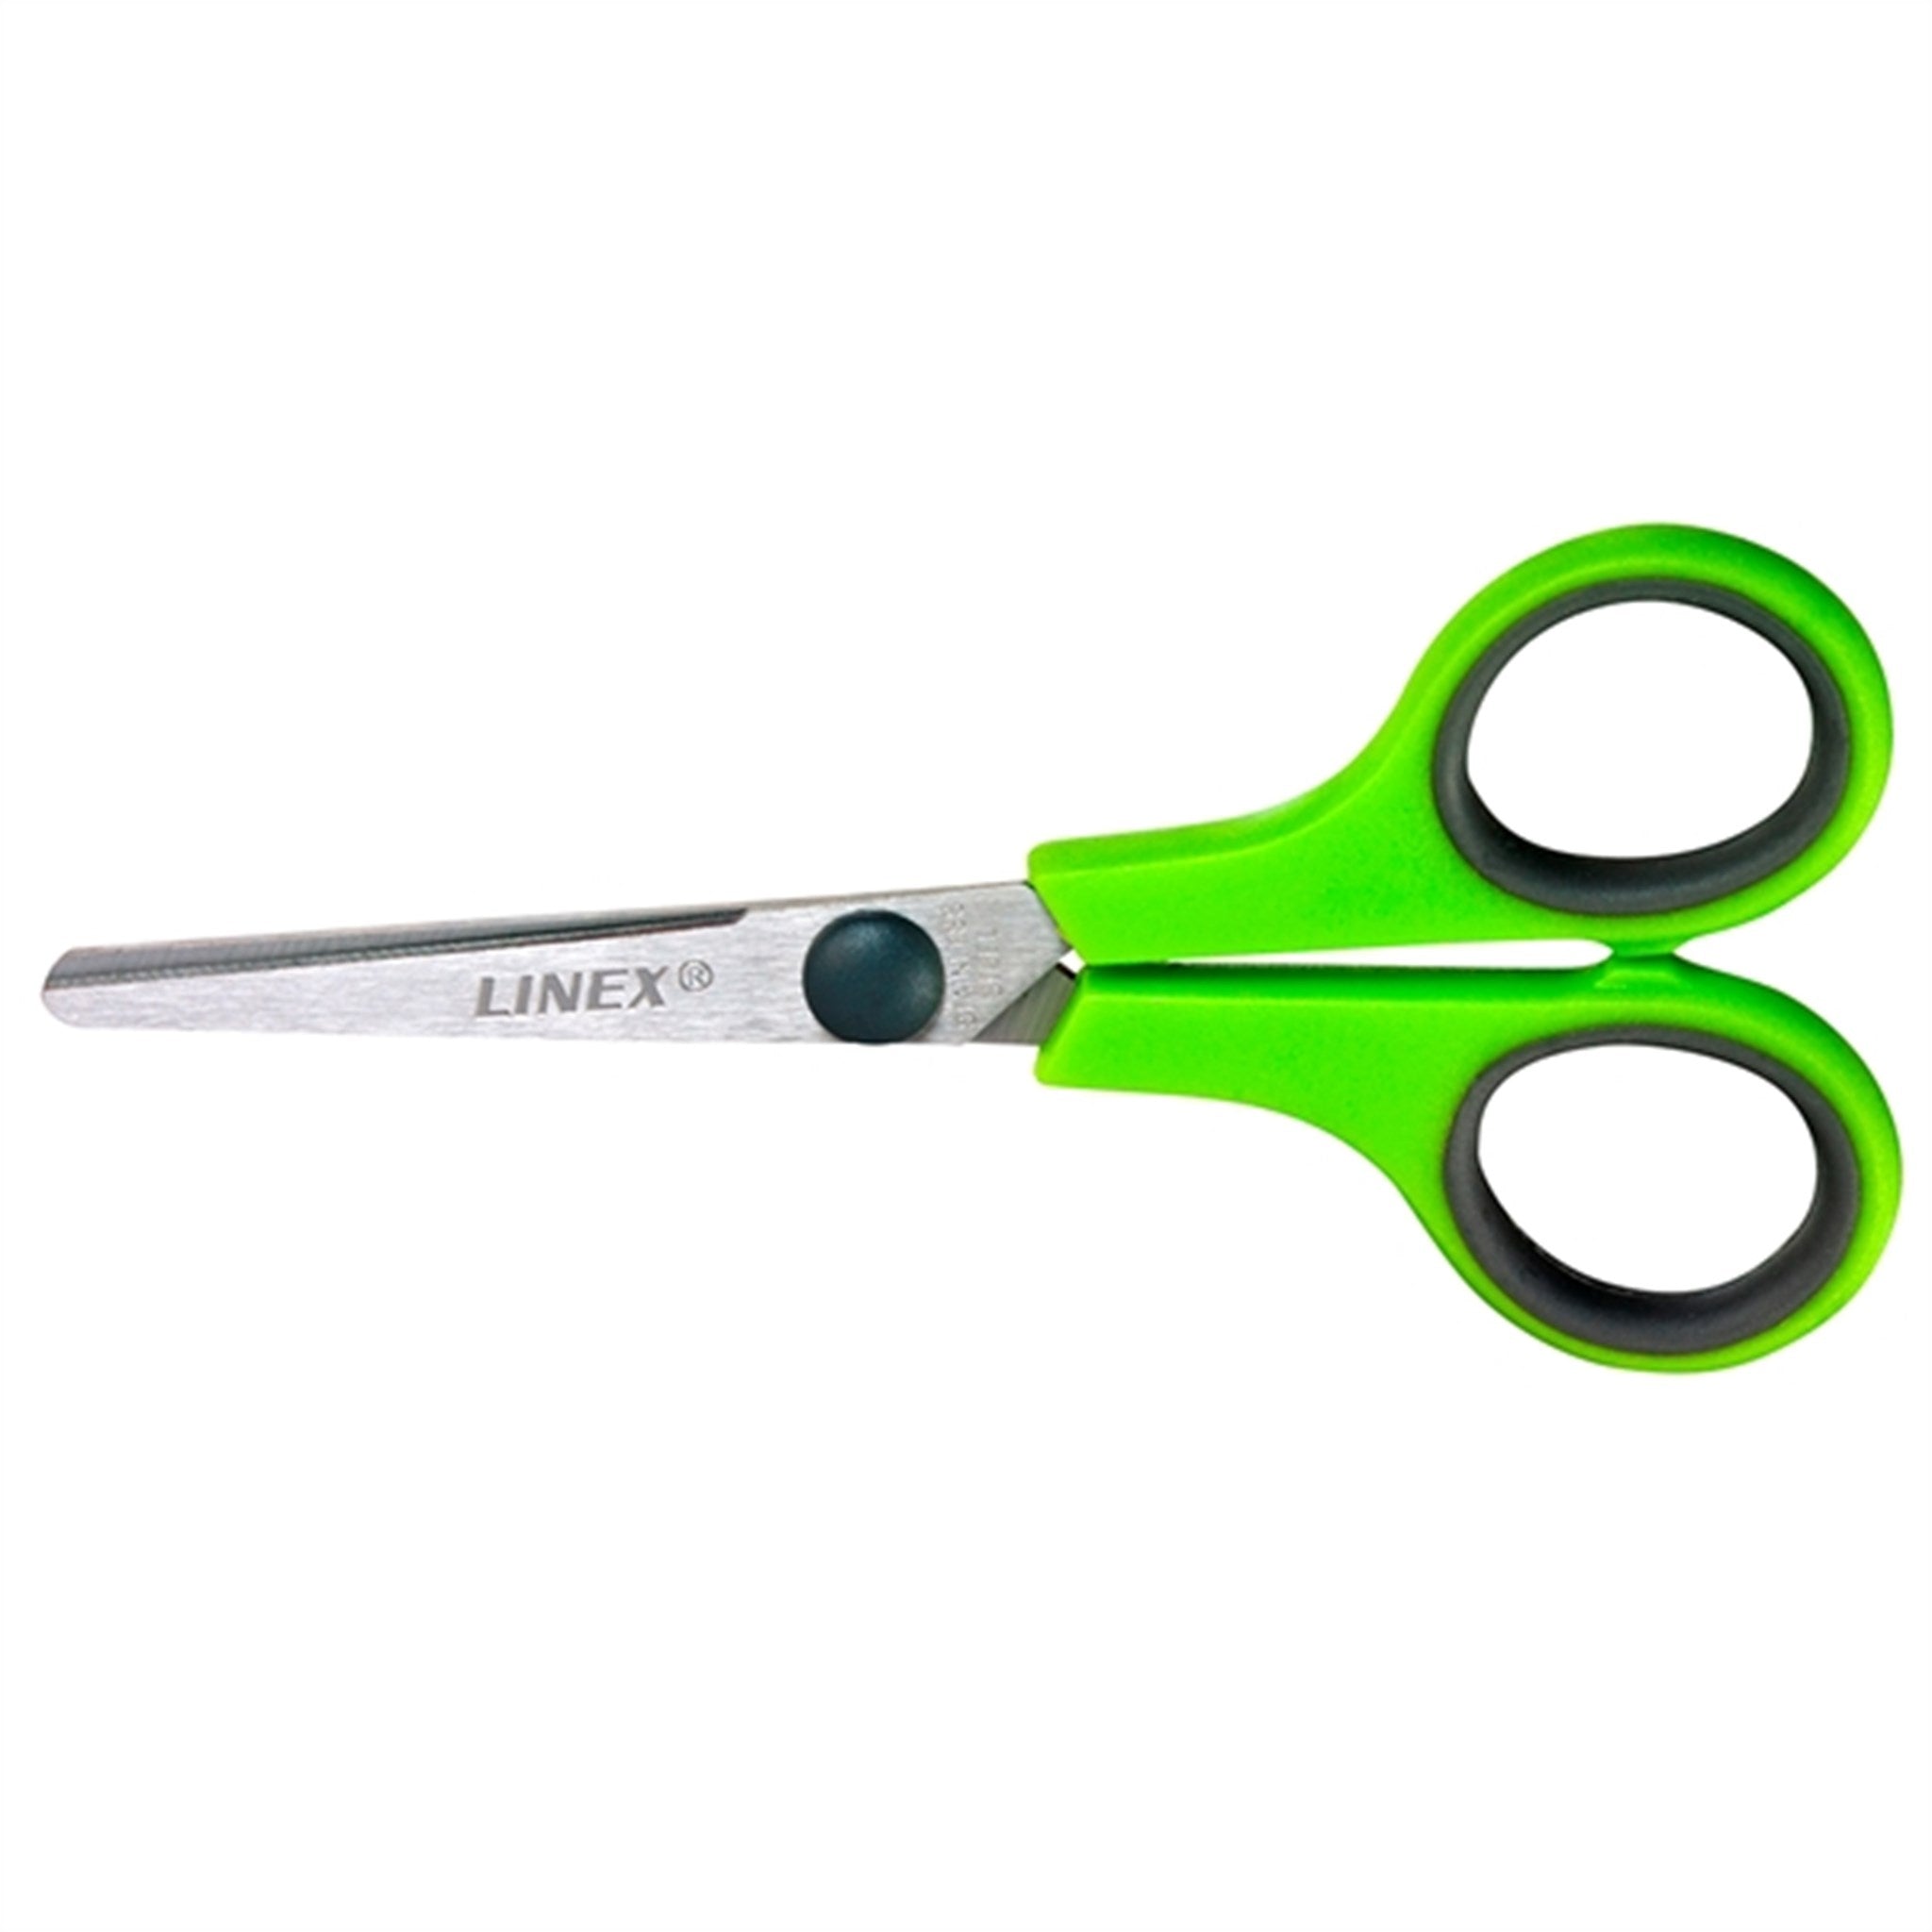 Linex Kids Scissors 140 Mm Green